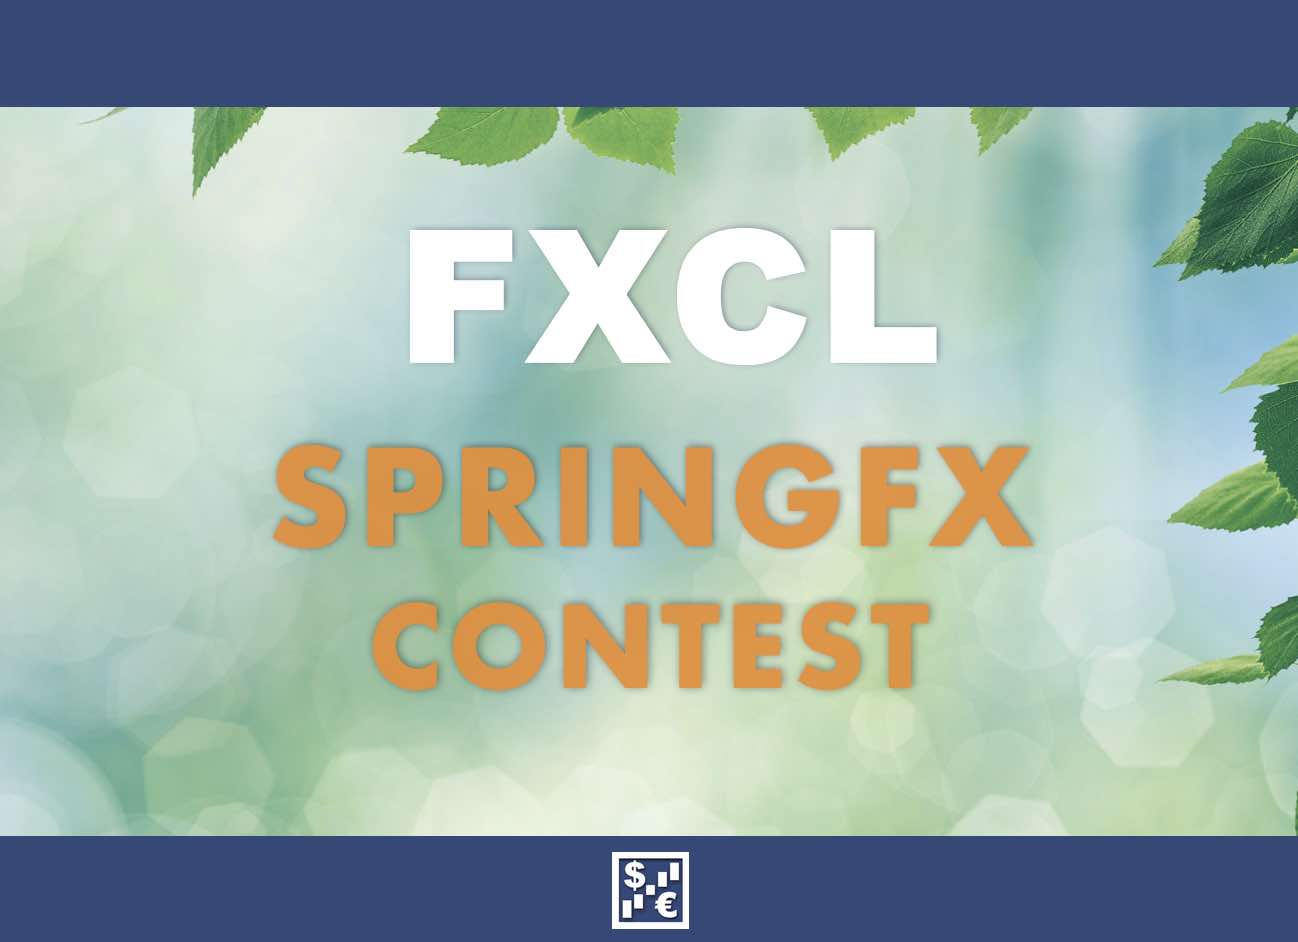 FXCL SpringFX Contest